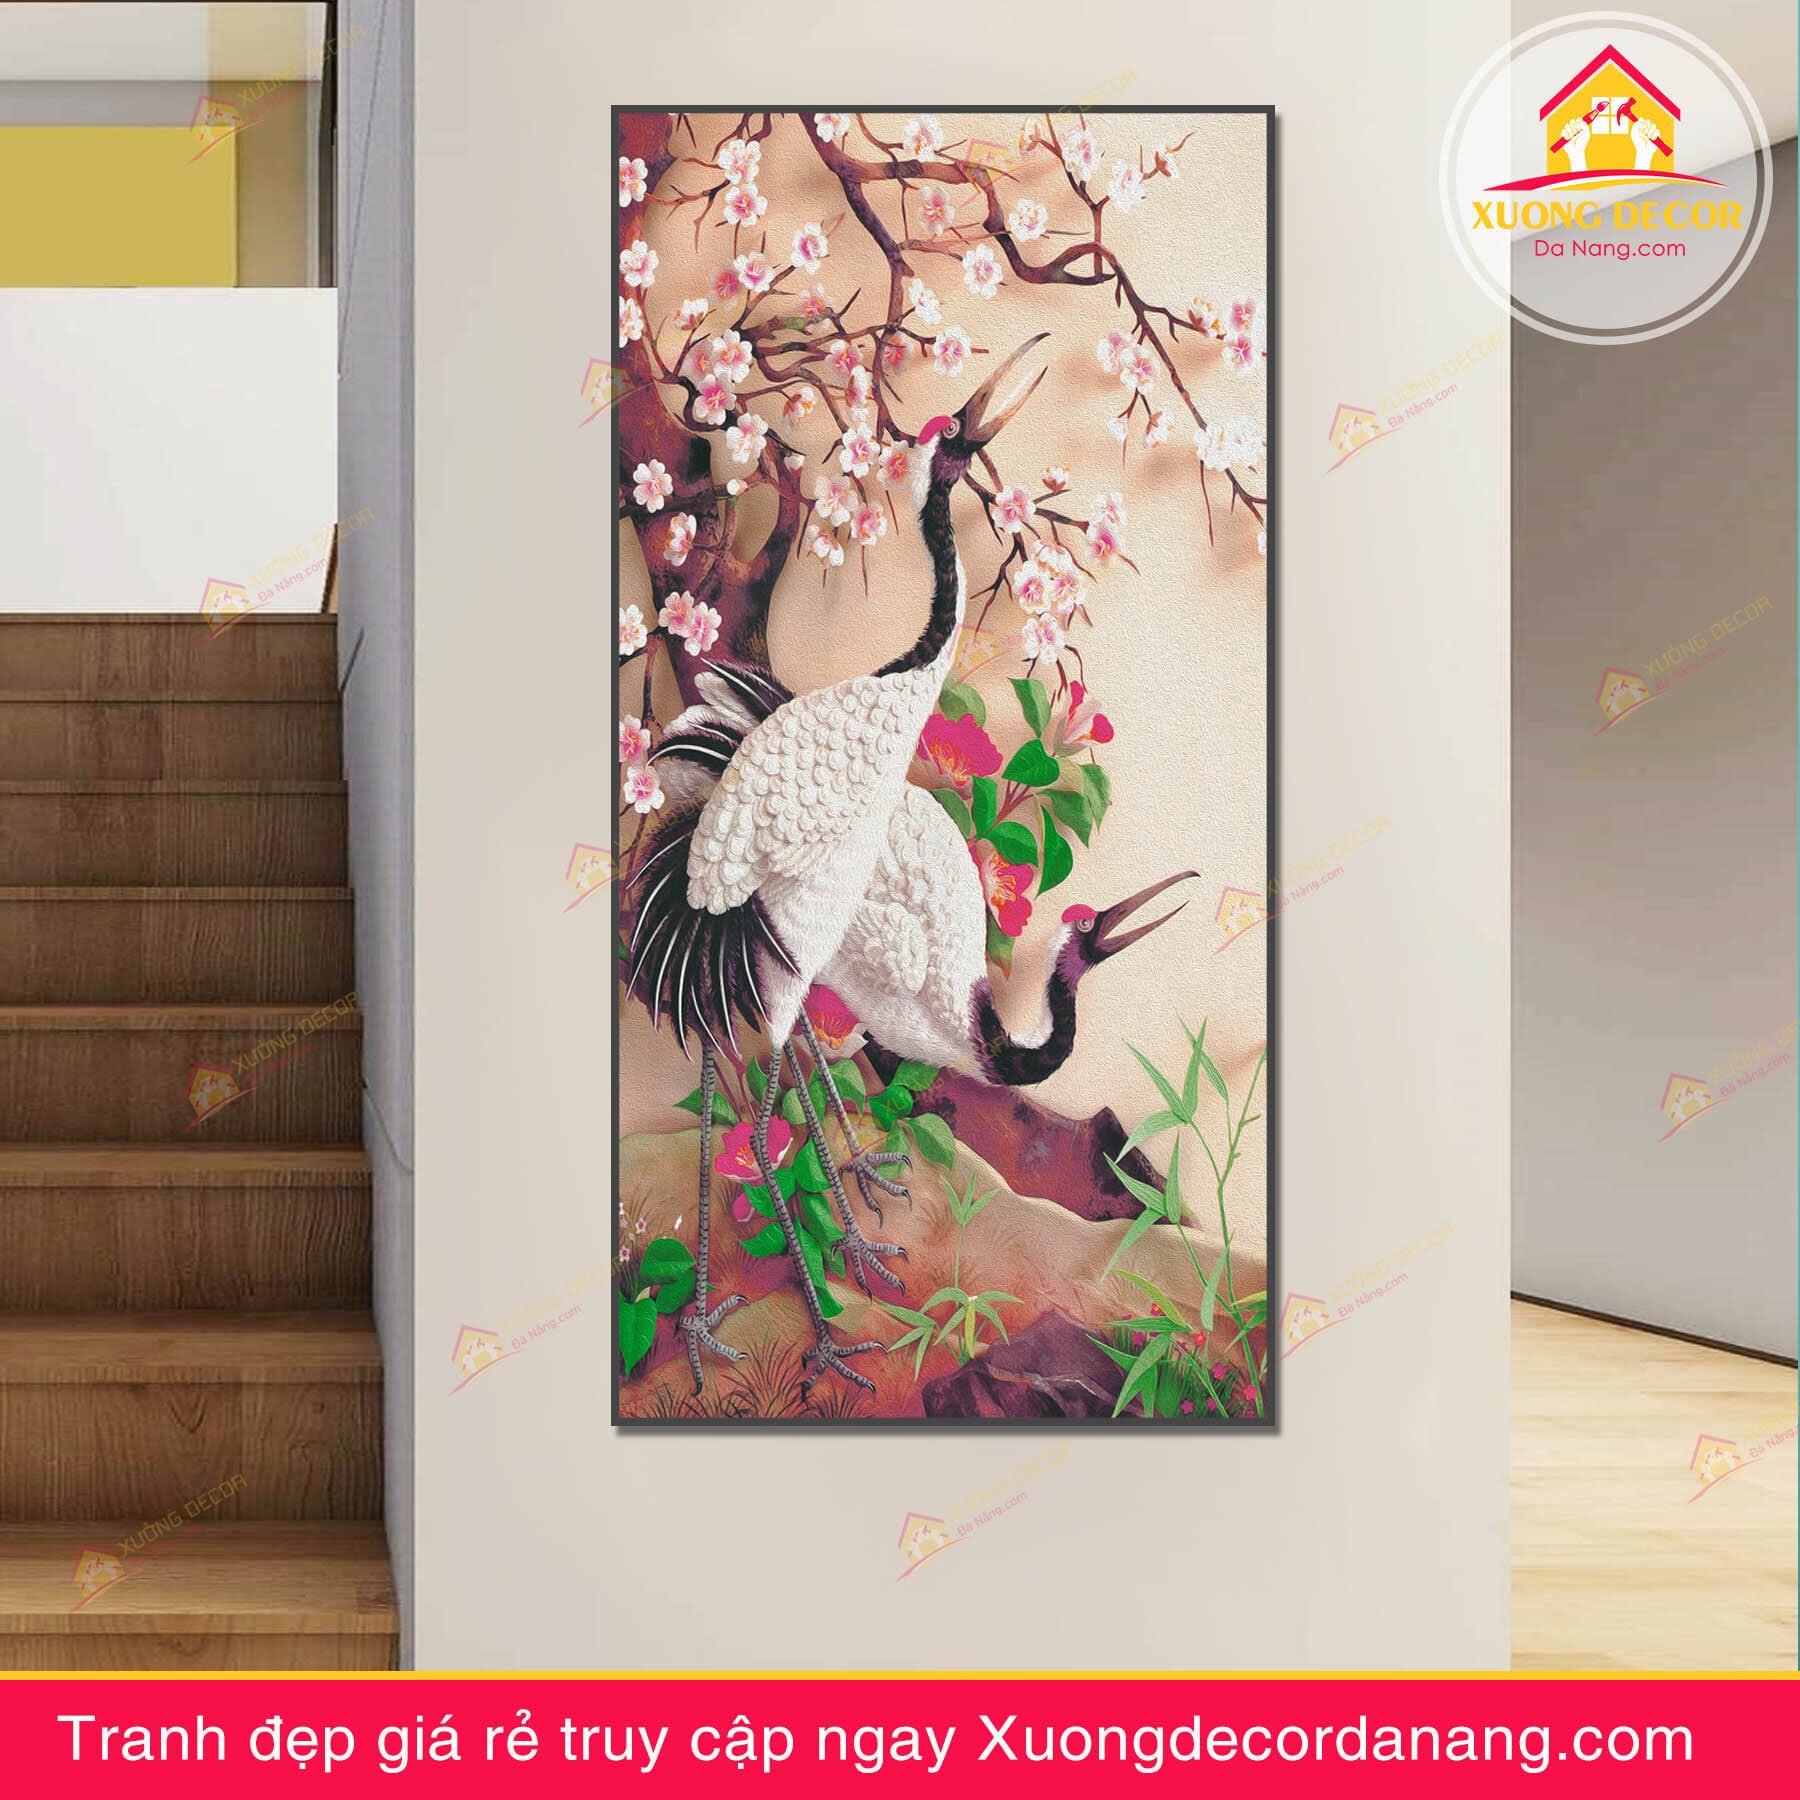 Tranh cặp chim hạc trắng bên cây đào xuân - TCH09 - Xưởng Decor Đà Nẵng -  Xưởng tranh canvas và nội thất decor giá rẻ tại Đà Nẵng